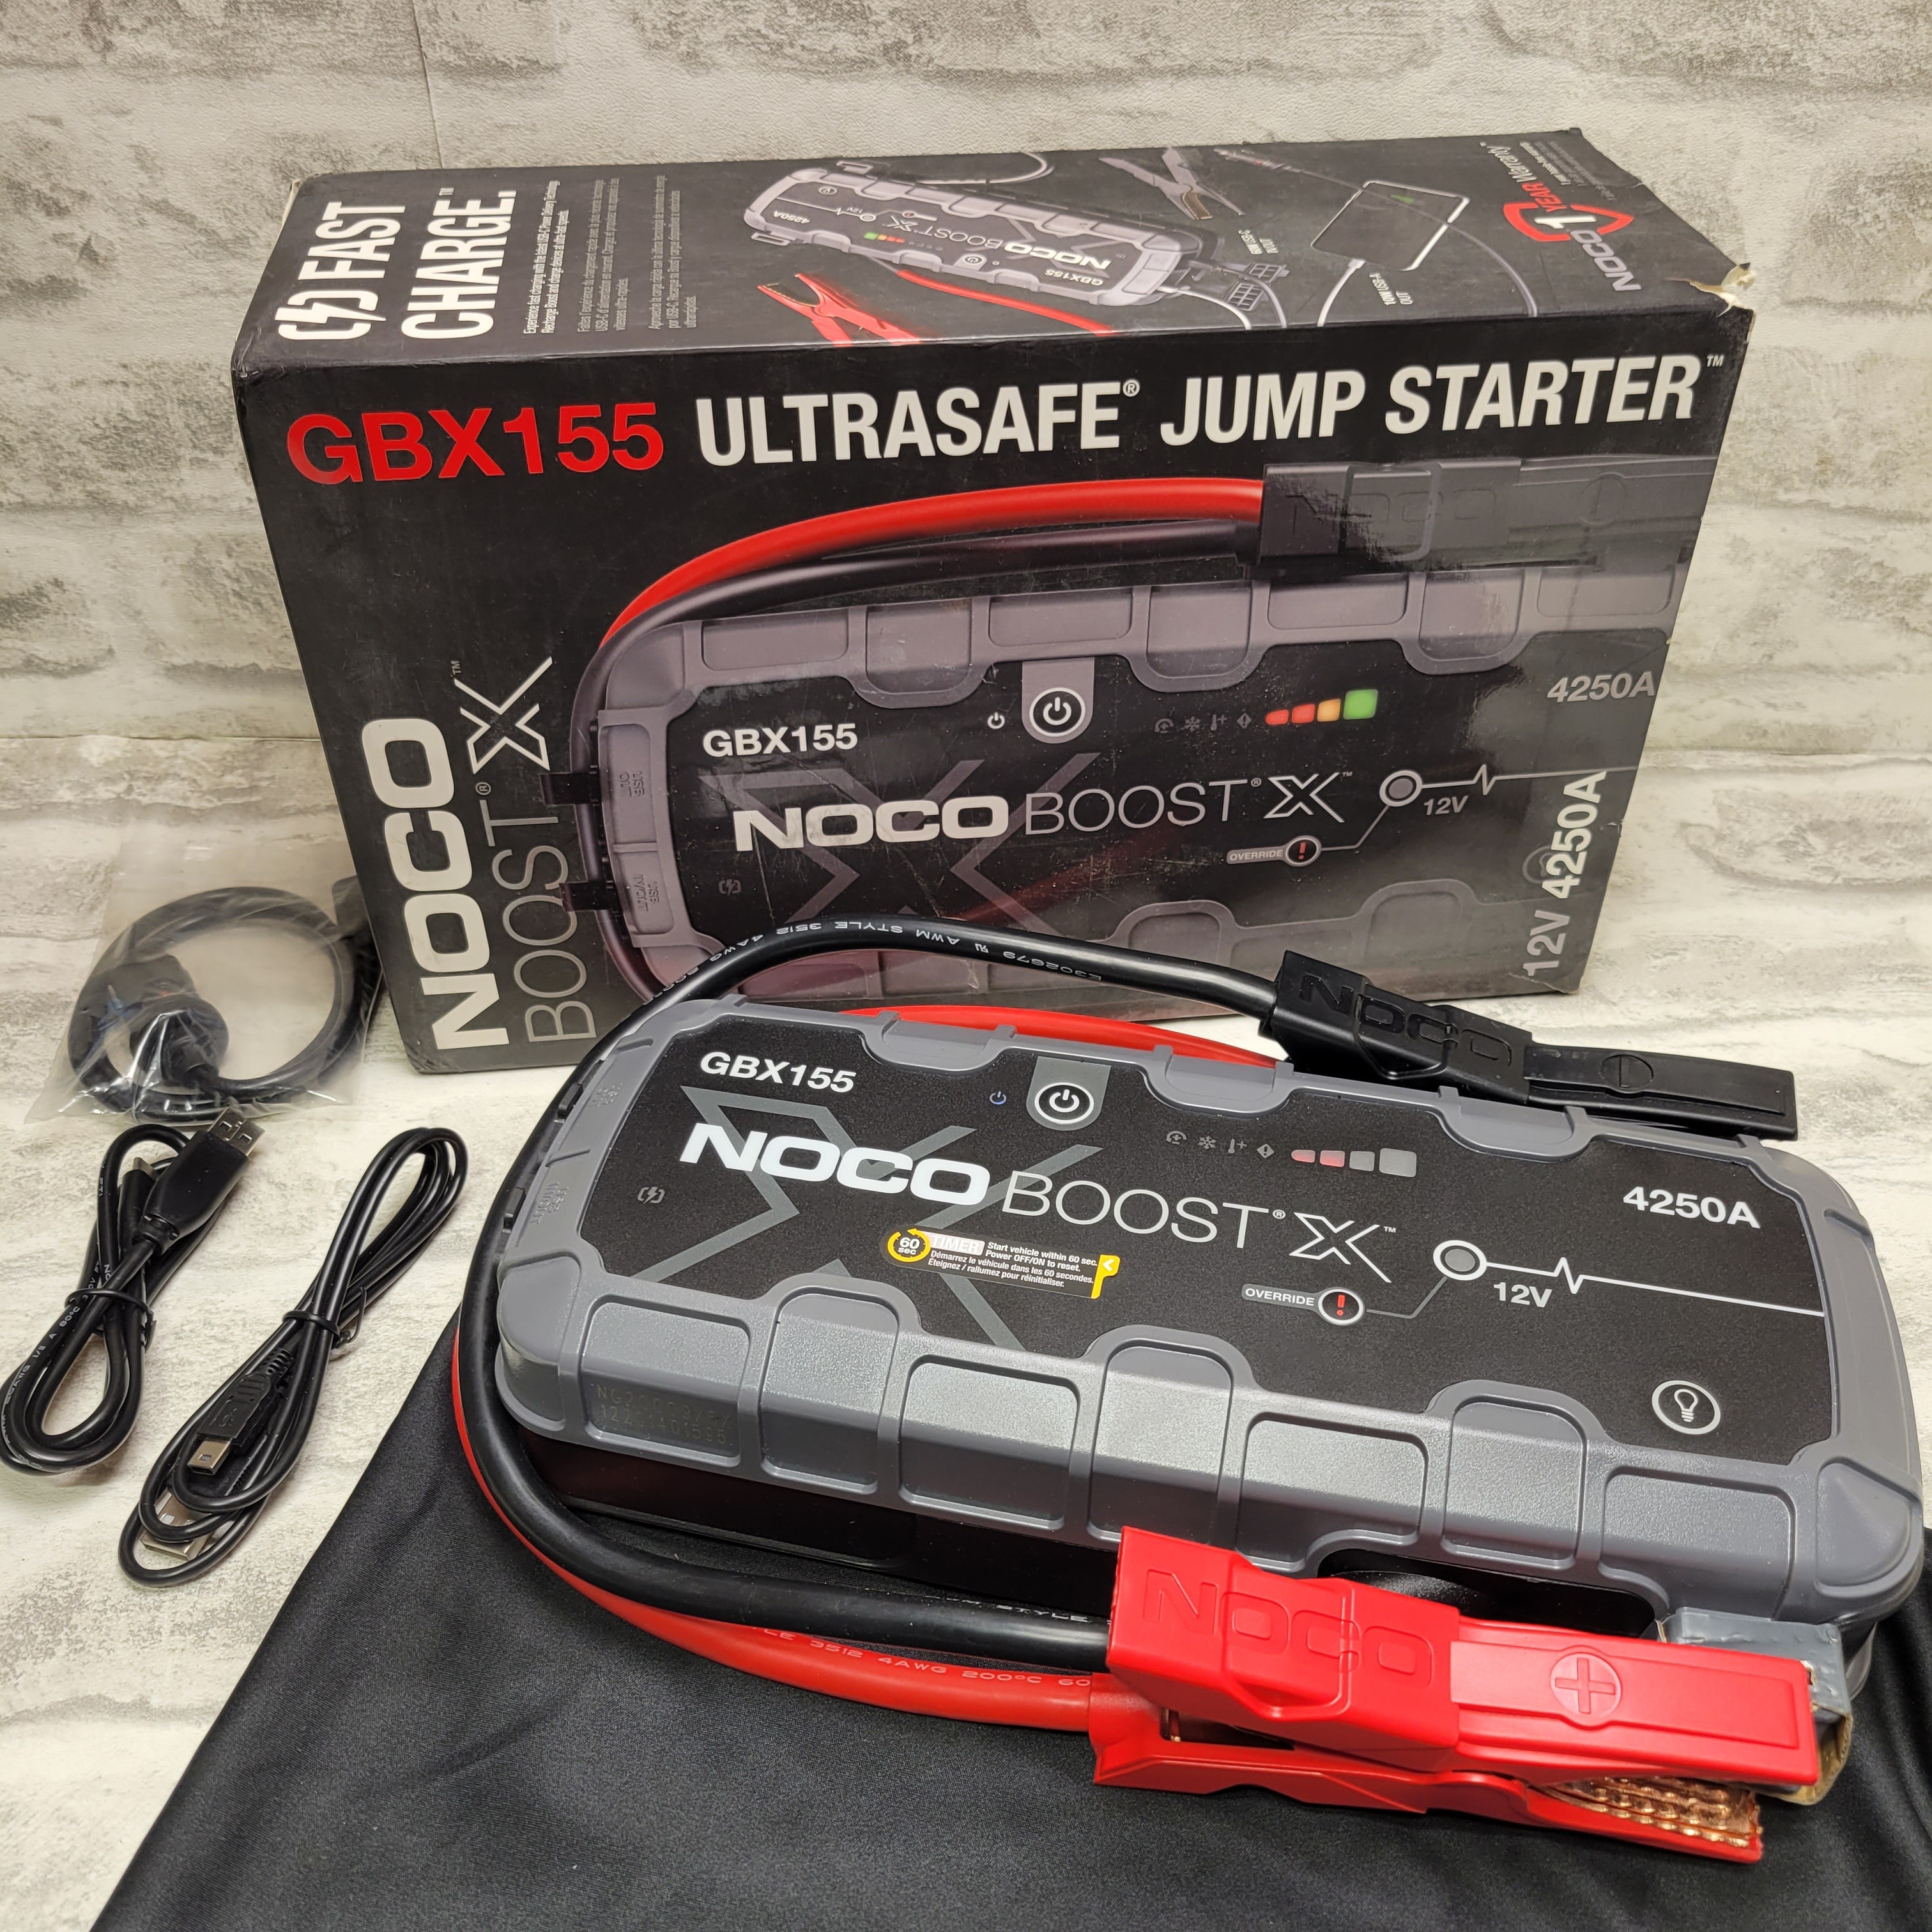 NOCO Boost X GBX155 4250A 12V Portable Lithium Jump Starter (7765448818926)